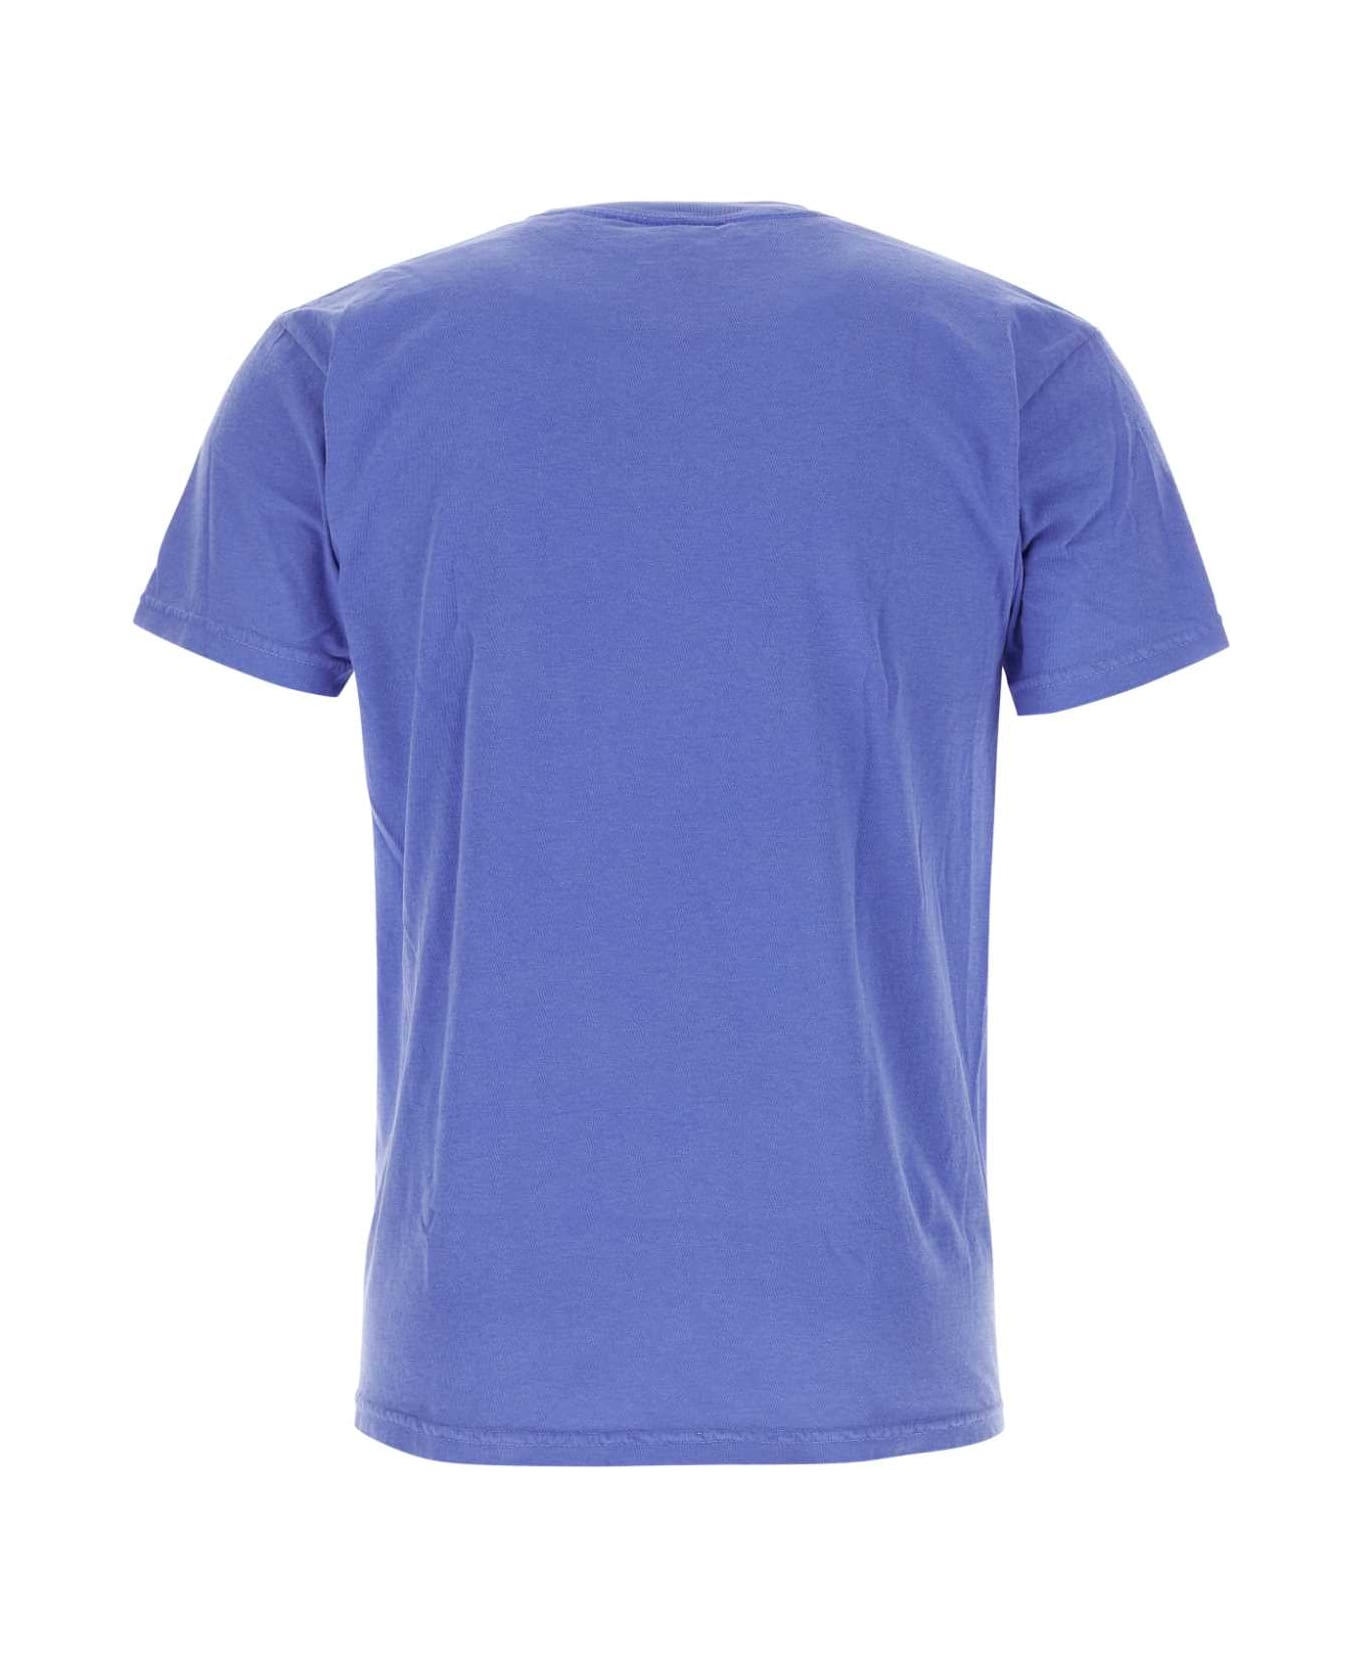 Kidsuper Cerulean Blue Cotton T-shirt - REUNIONLILAC